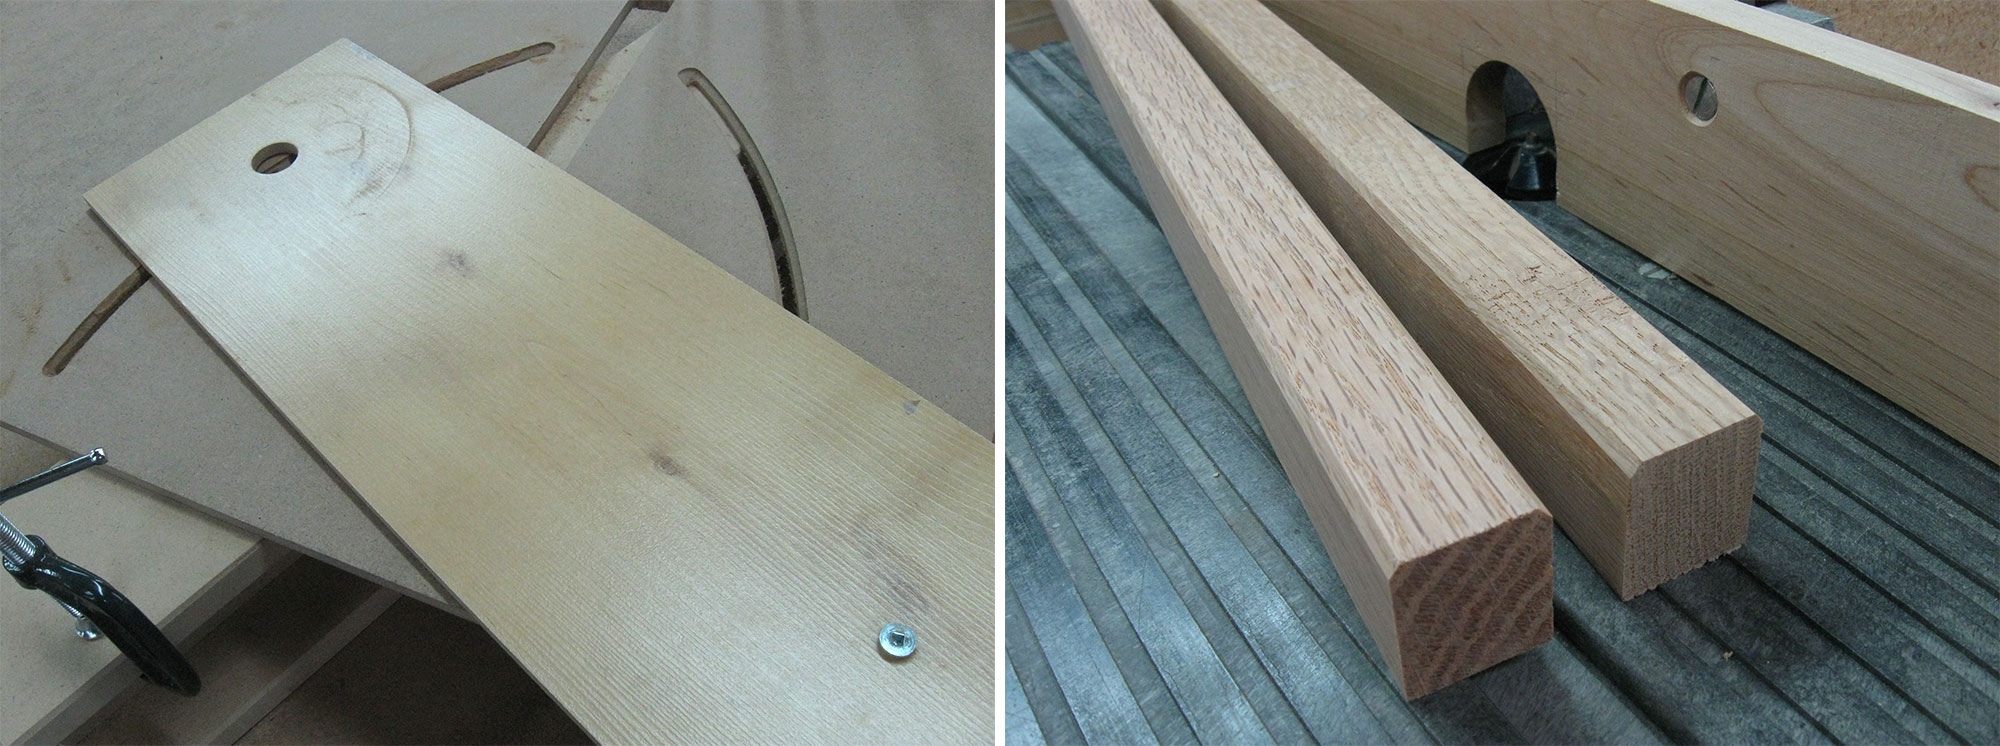 Image de gauche : Rainures terminées. Image de droite : Réalisation des tasseaux en bois dur.